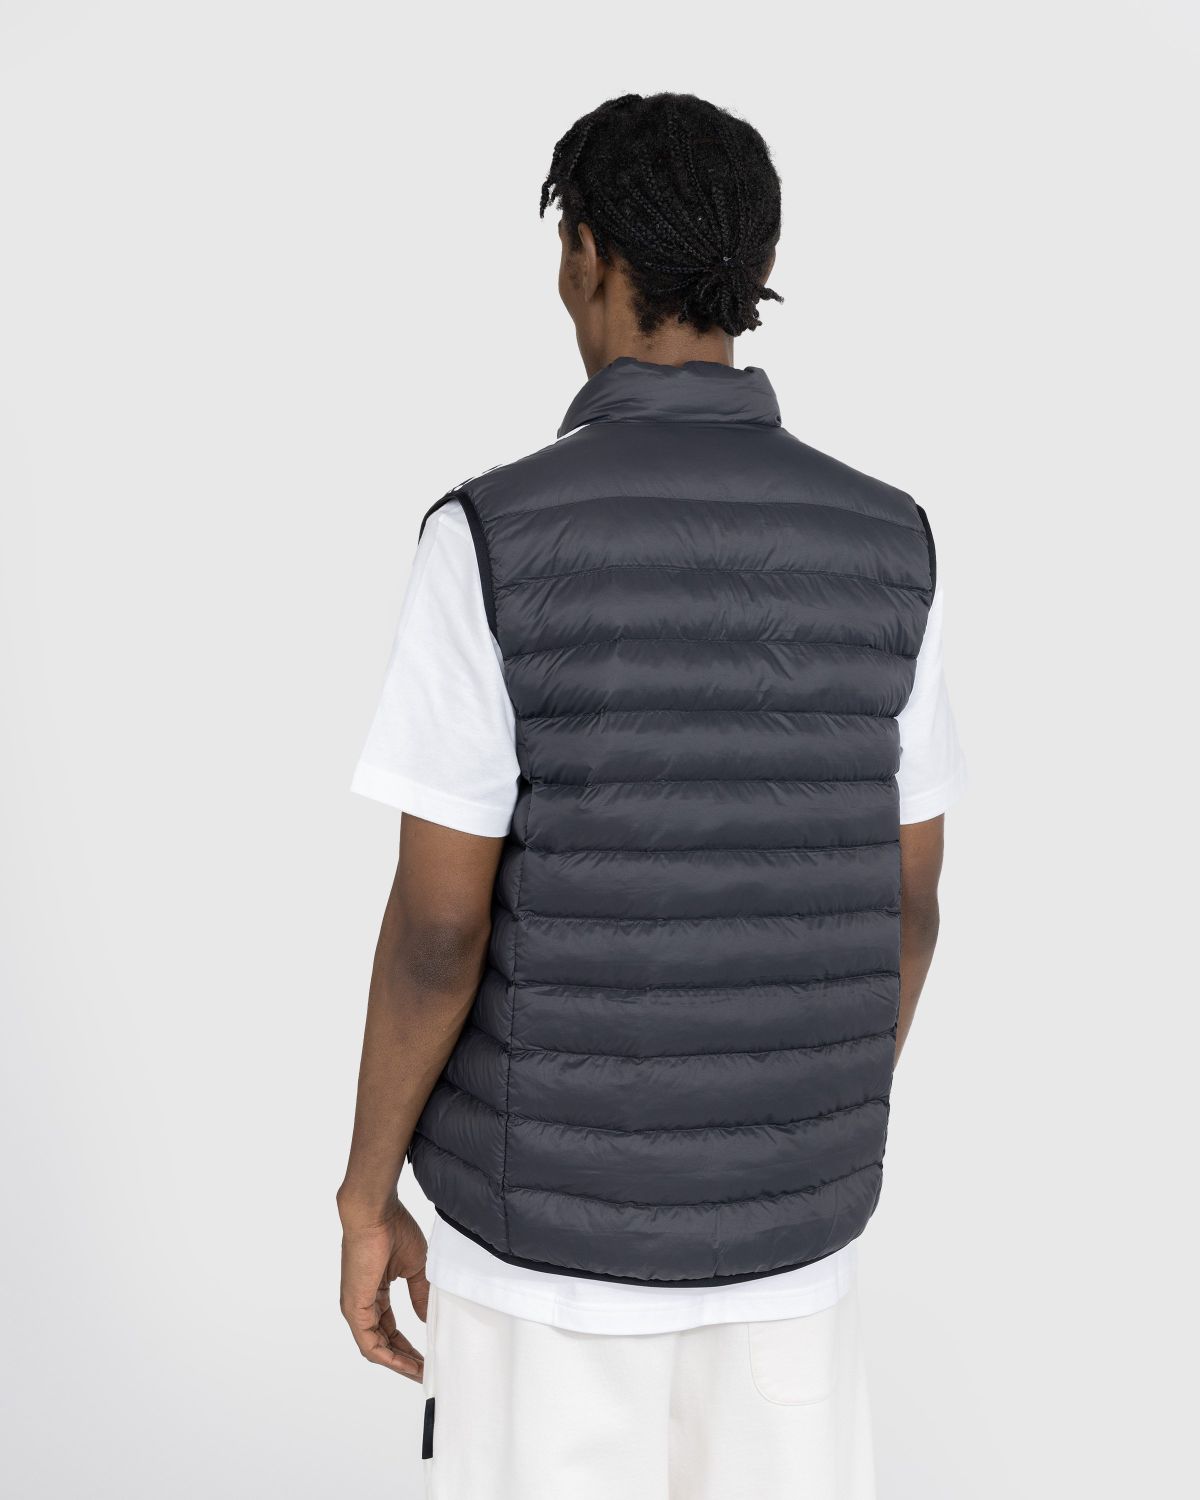 Padded | Shop – Vest Highsnobiety Adidas Black/White